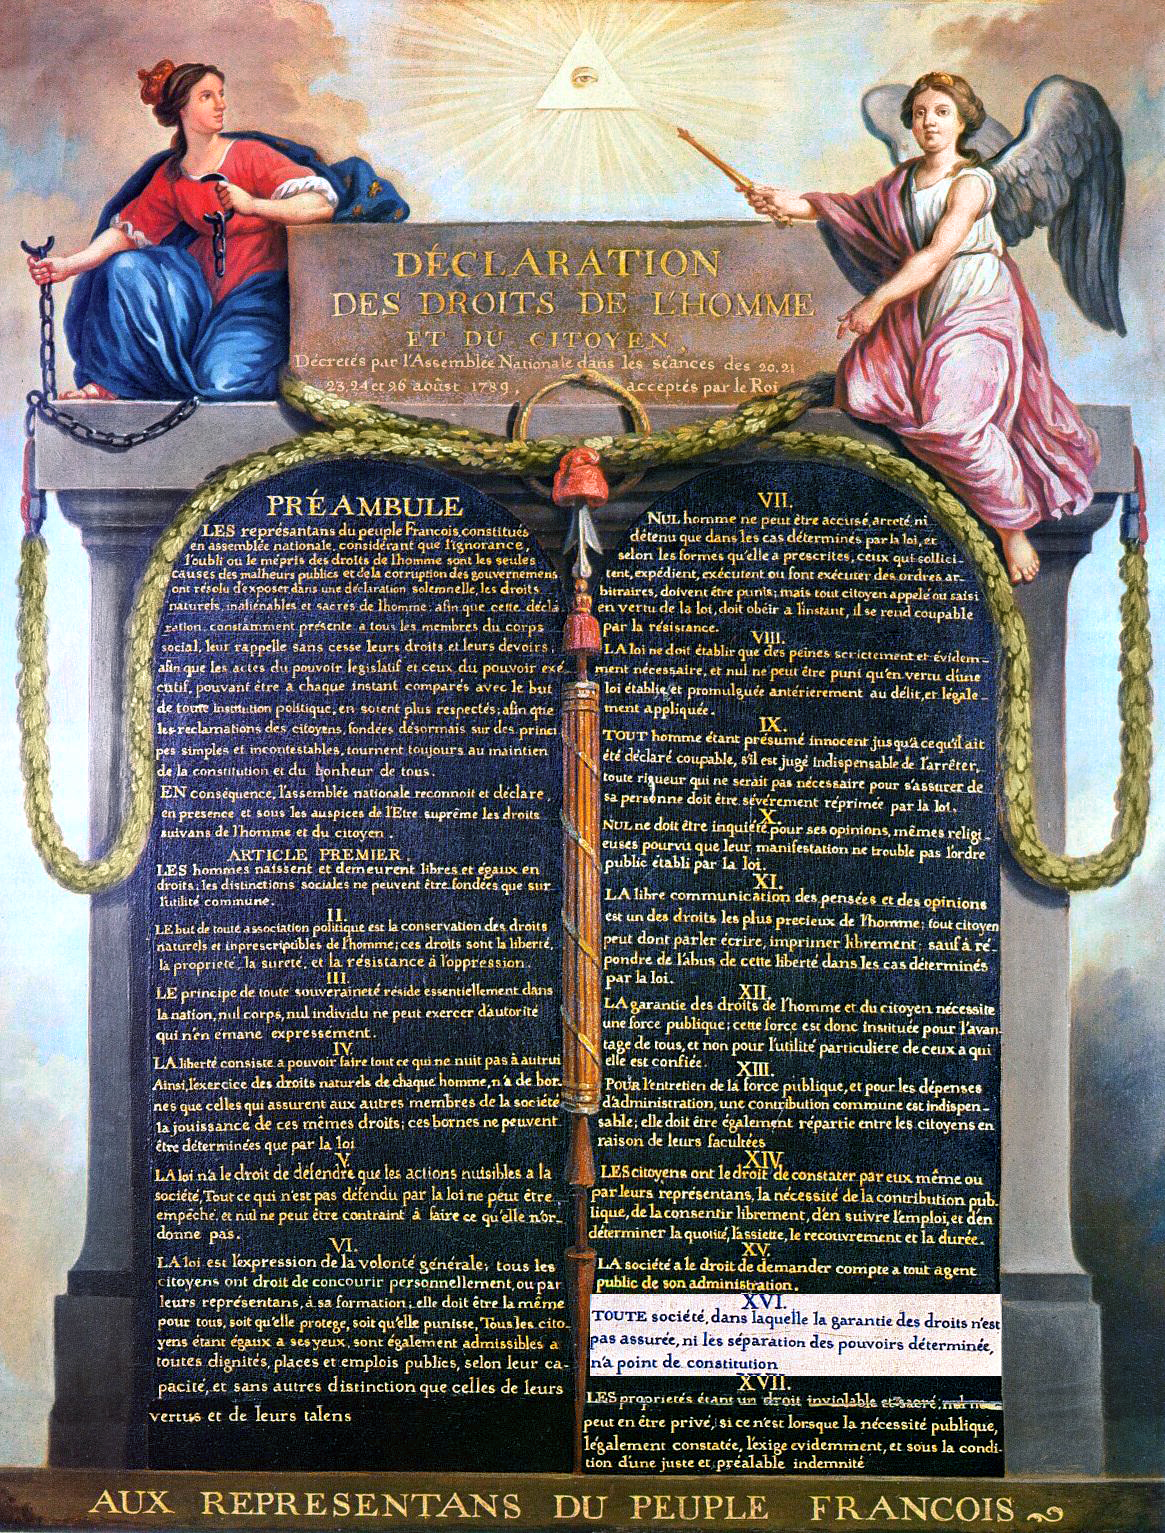 Texto original en francés de la Declaración de los derechos del hombre y del ciudadano.